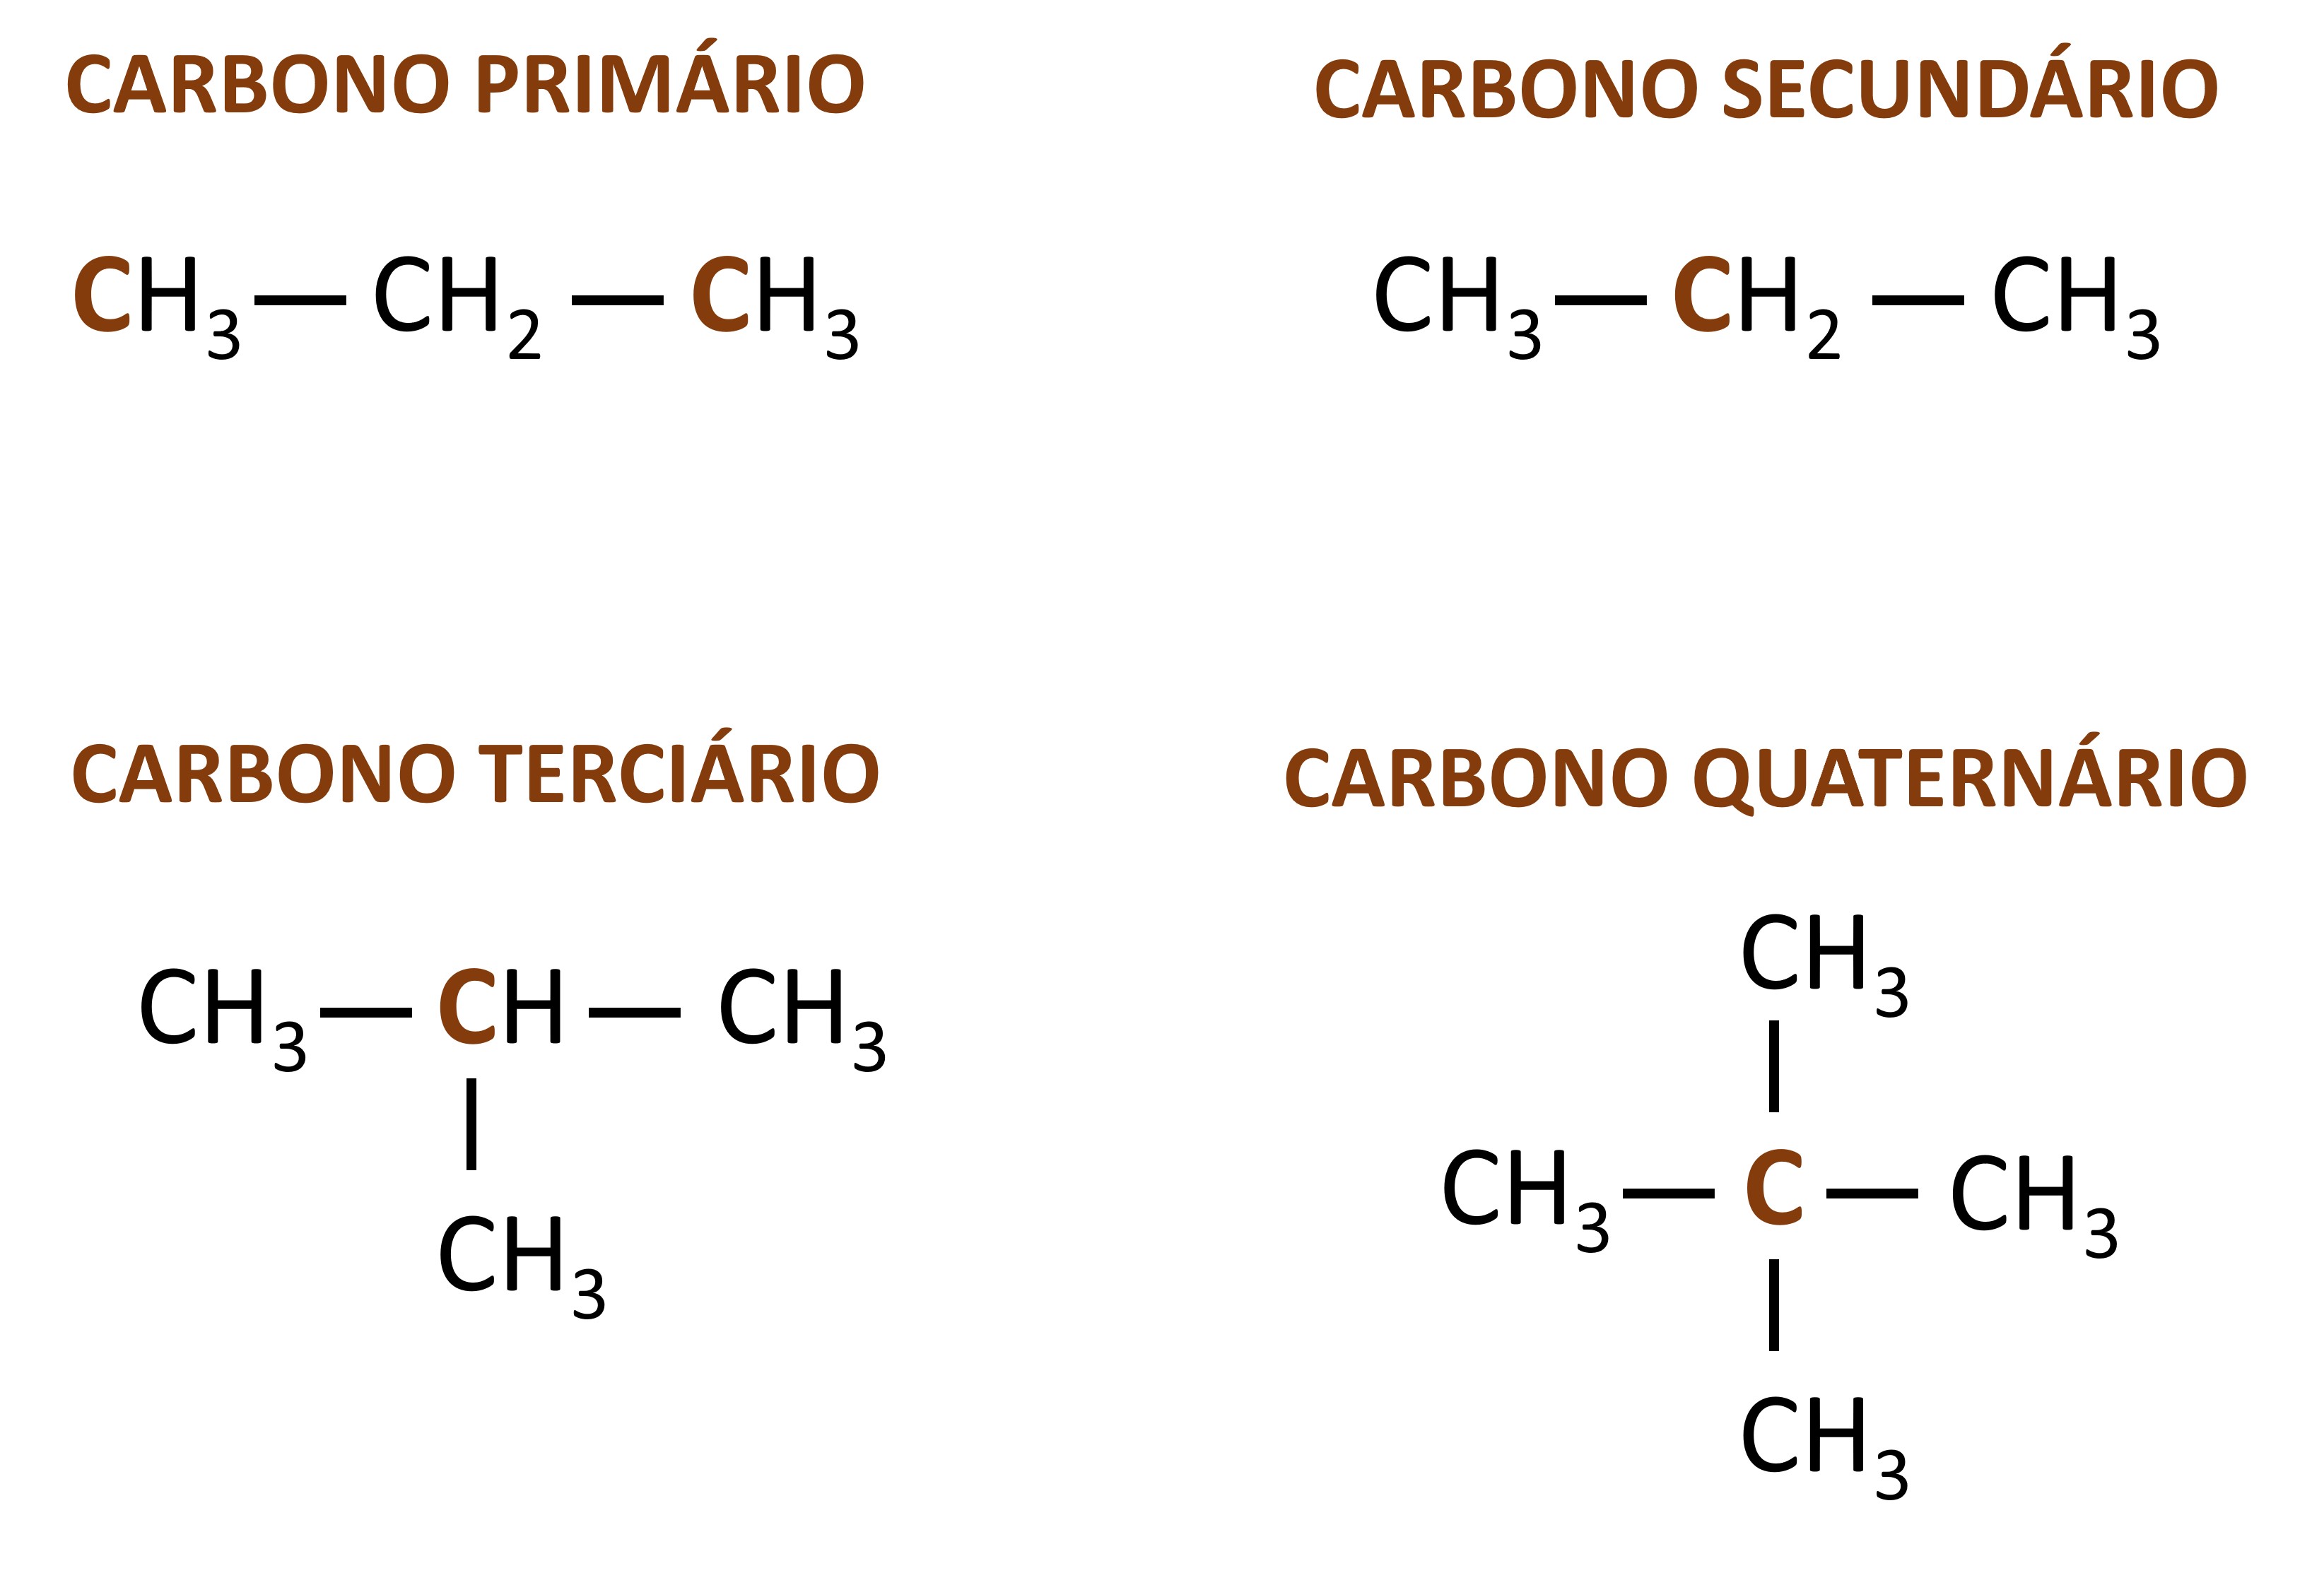  Classificação dos carbonos na cadeia carbônica de acordo com a quantidade de ligações formadas com outros átomos de carbono.